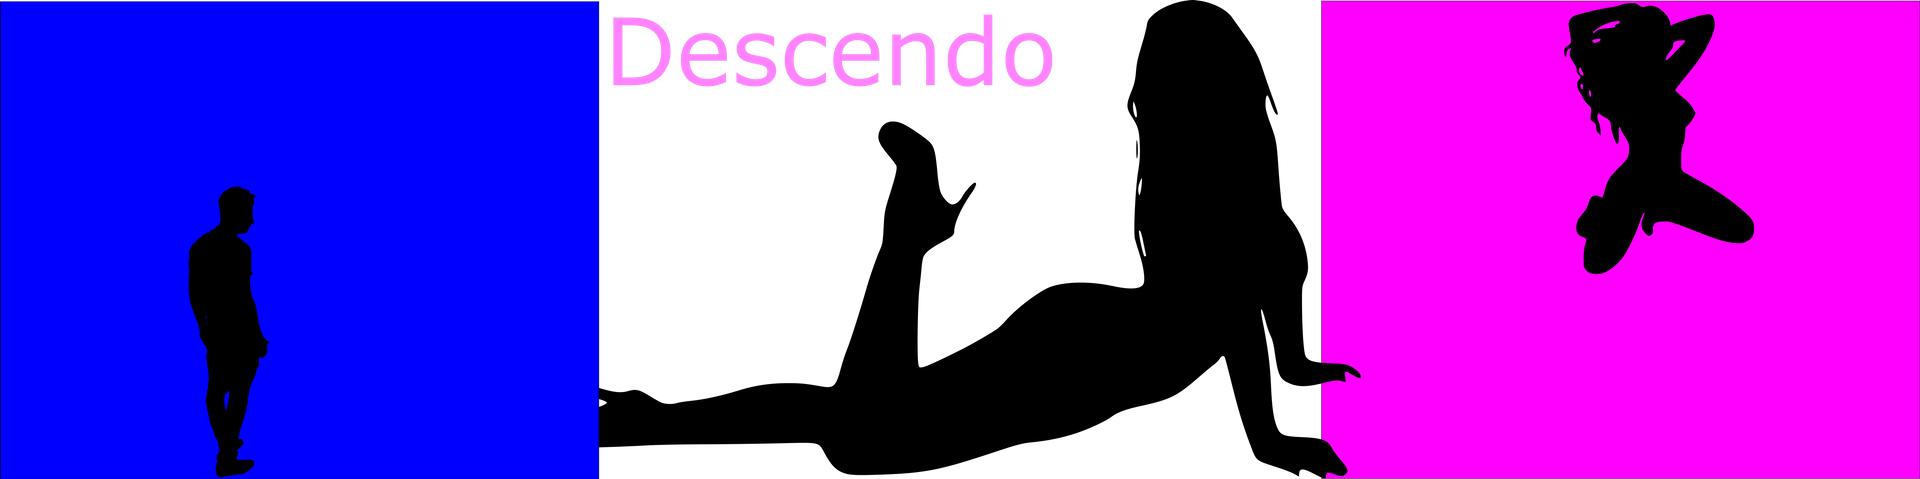 Descendo Version 0.4 by Yuscia